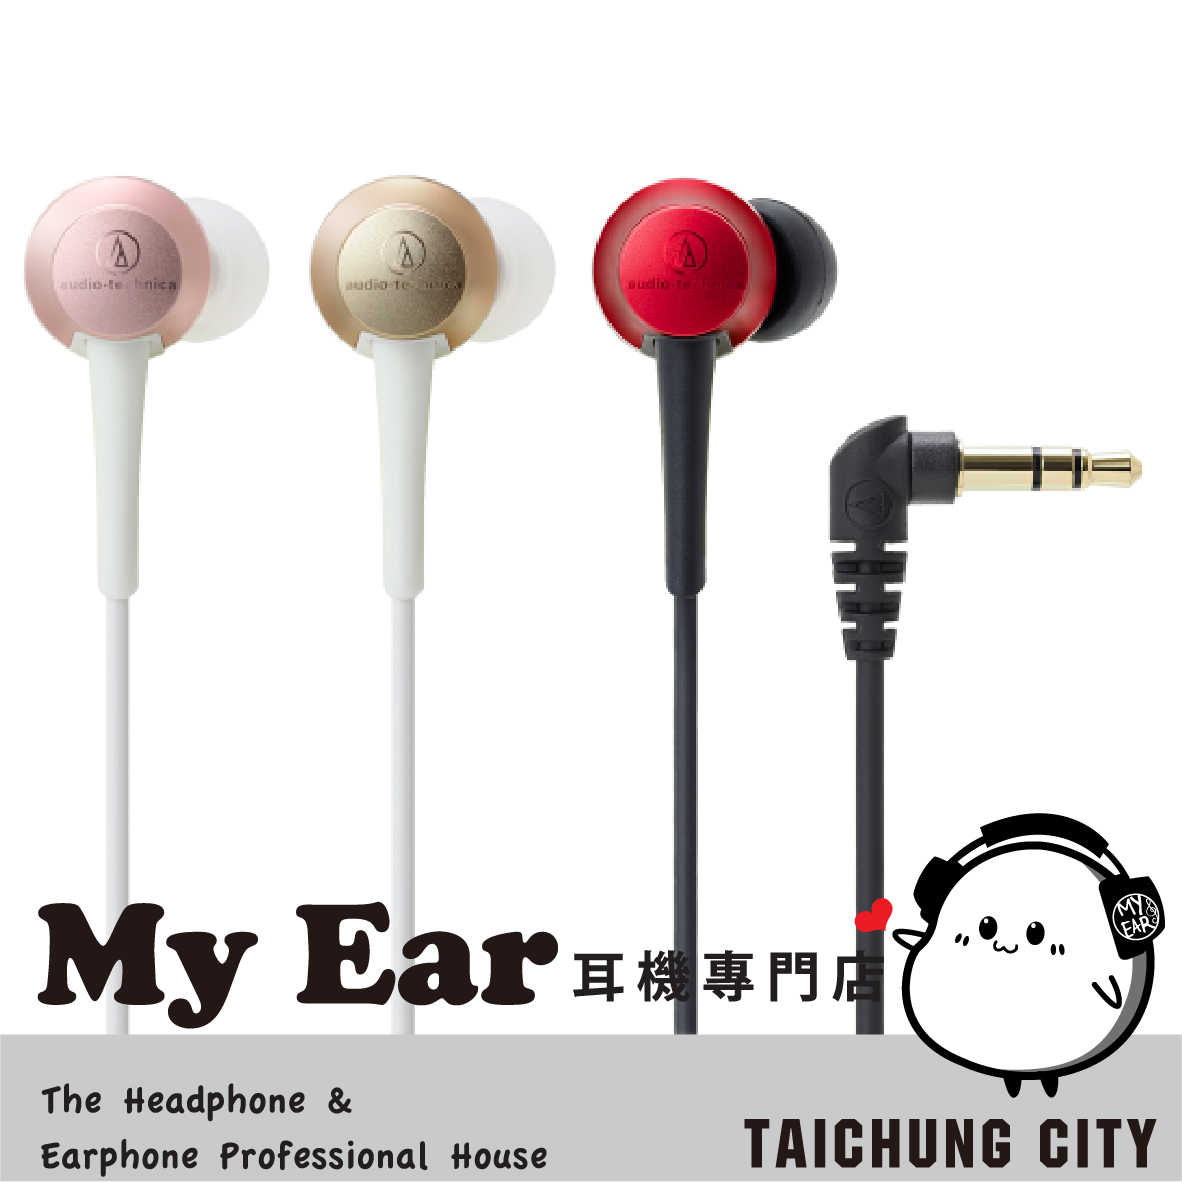 鐵三角 ATH-CKR70 耳道式耳機 多色可選｜My Ear 耳機專門店